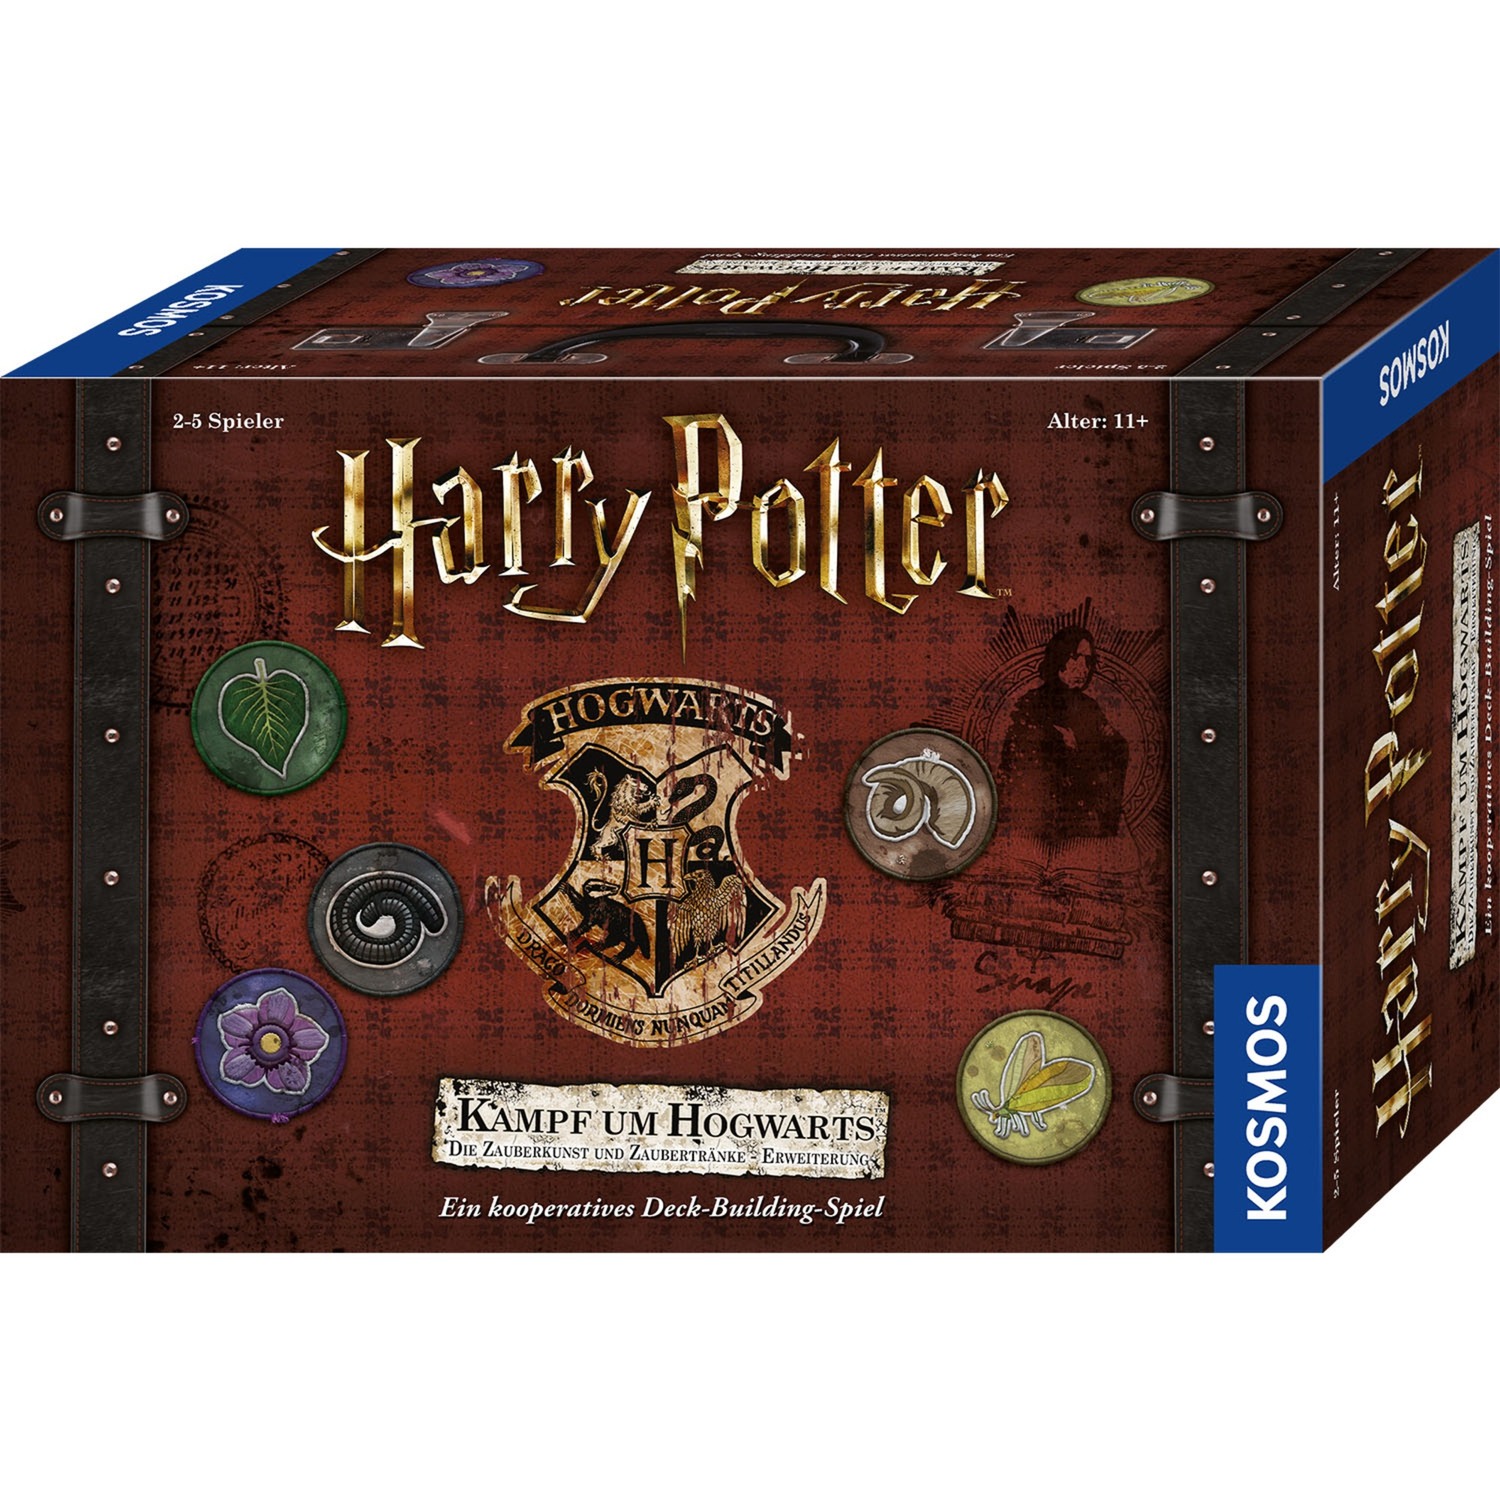 Image of Alternate - Harry Potter: Kampf um Hogwarts - Zauberkunst und Zaubertränke Erweiterung, Kartenspiel online einkaufen bei Alternate